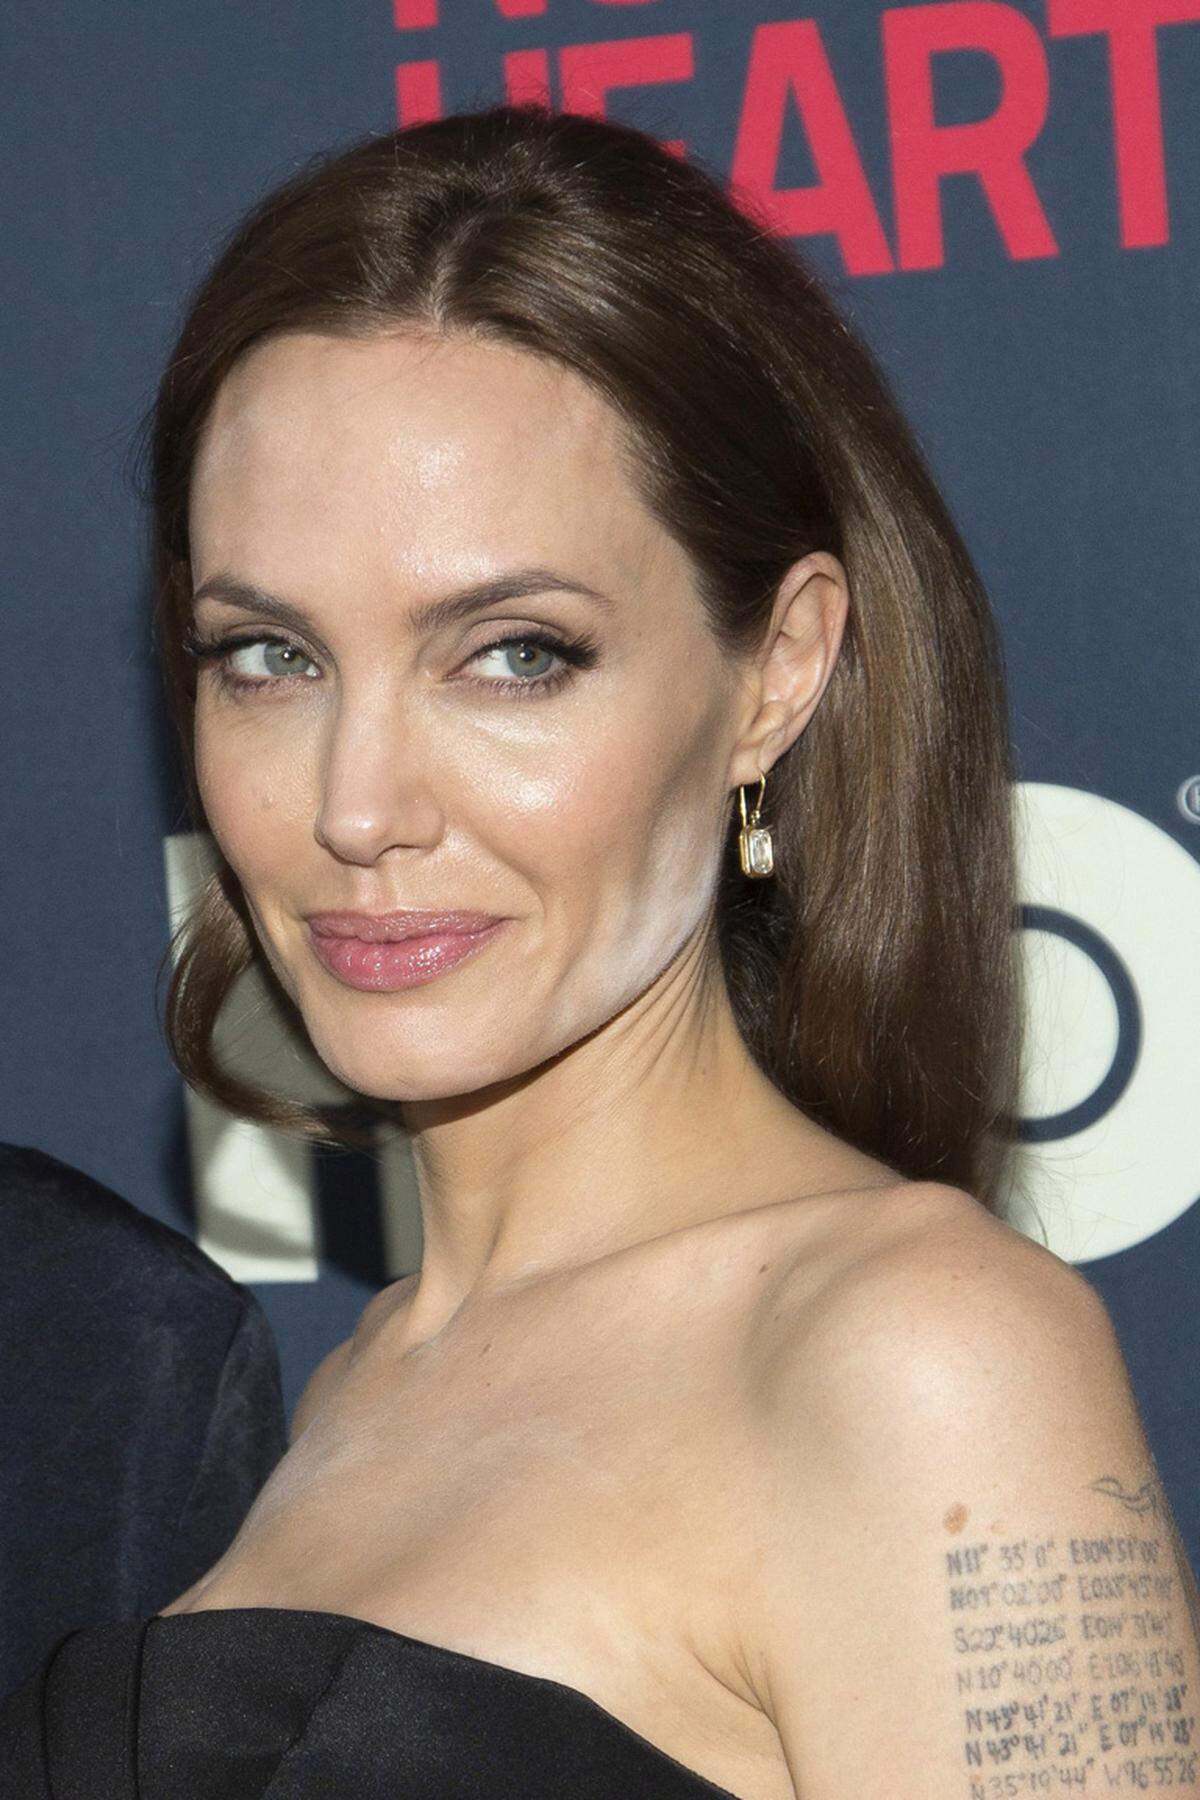 Das Styling-Team rund um Angelina Jolie hat hier wohl gepfuscht. Immerhin brachte das Blitzlicht deutliche Puderspuren an Kinn und Dekolleté zur Vorschau. Diese Make-up-Panne passierte auch schon vielen anderen Stars.